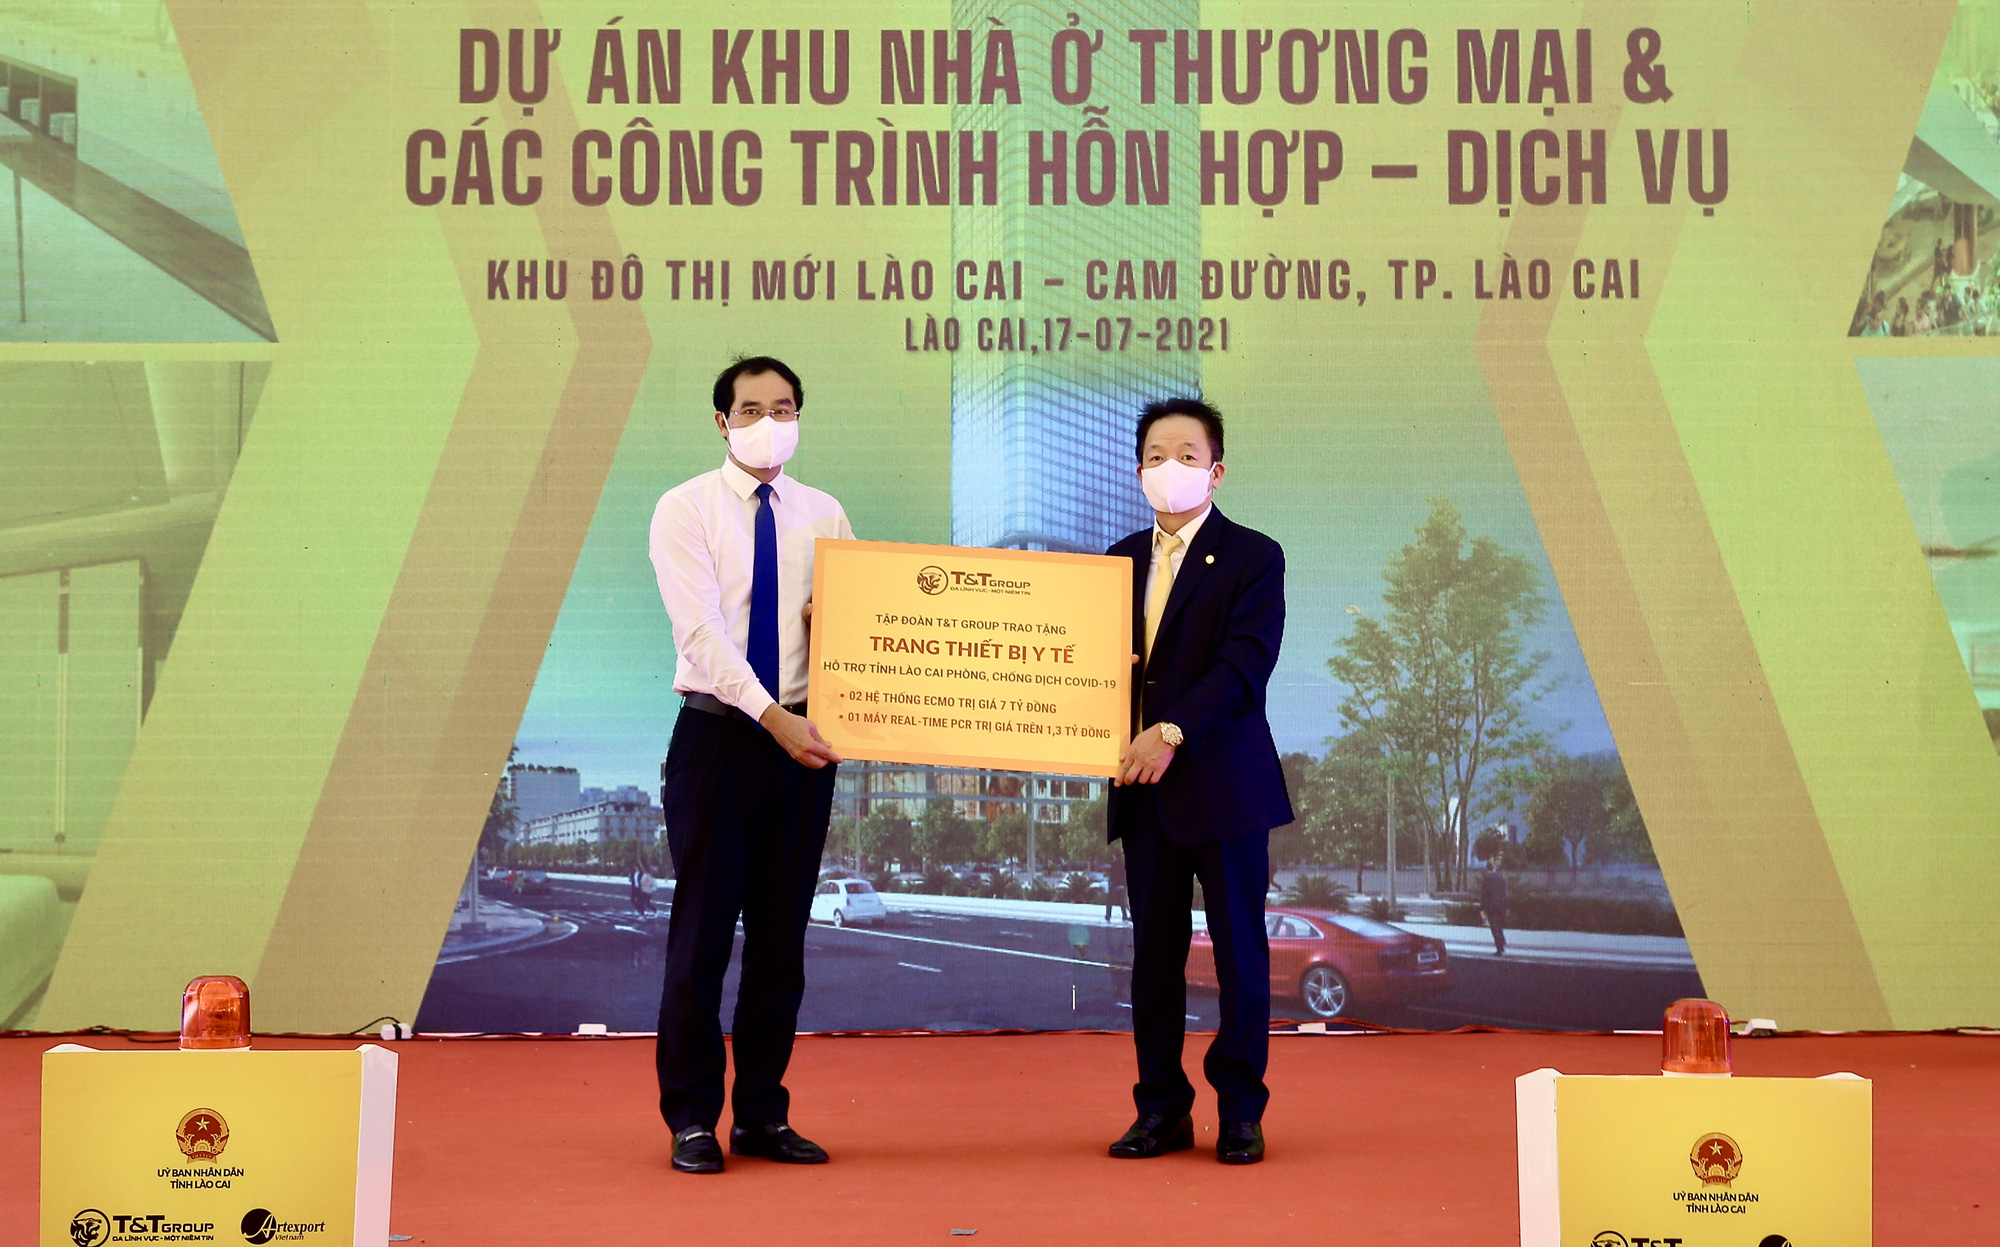 Bất động sản mới Lào Cai - Cam Đường